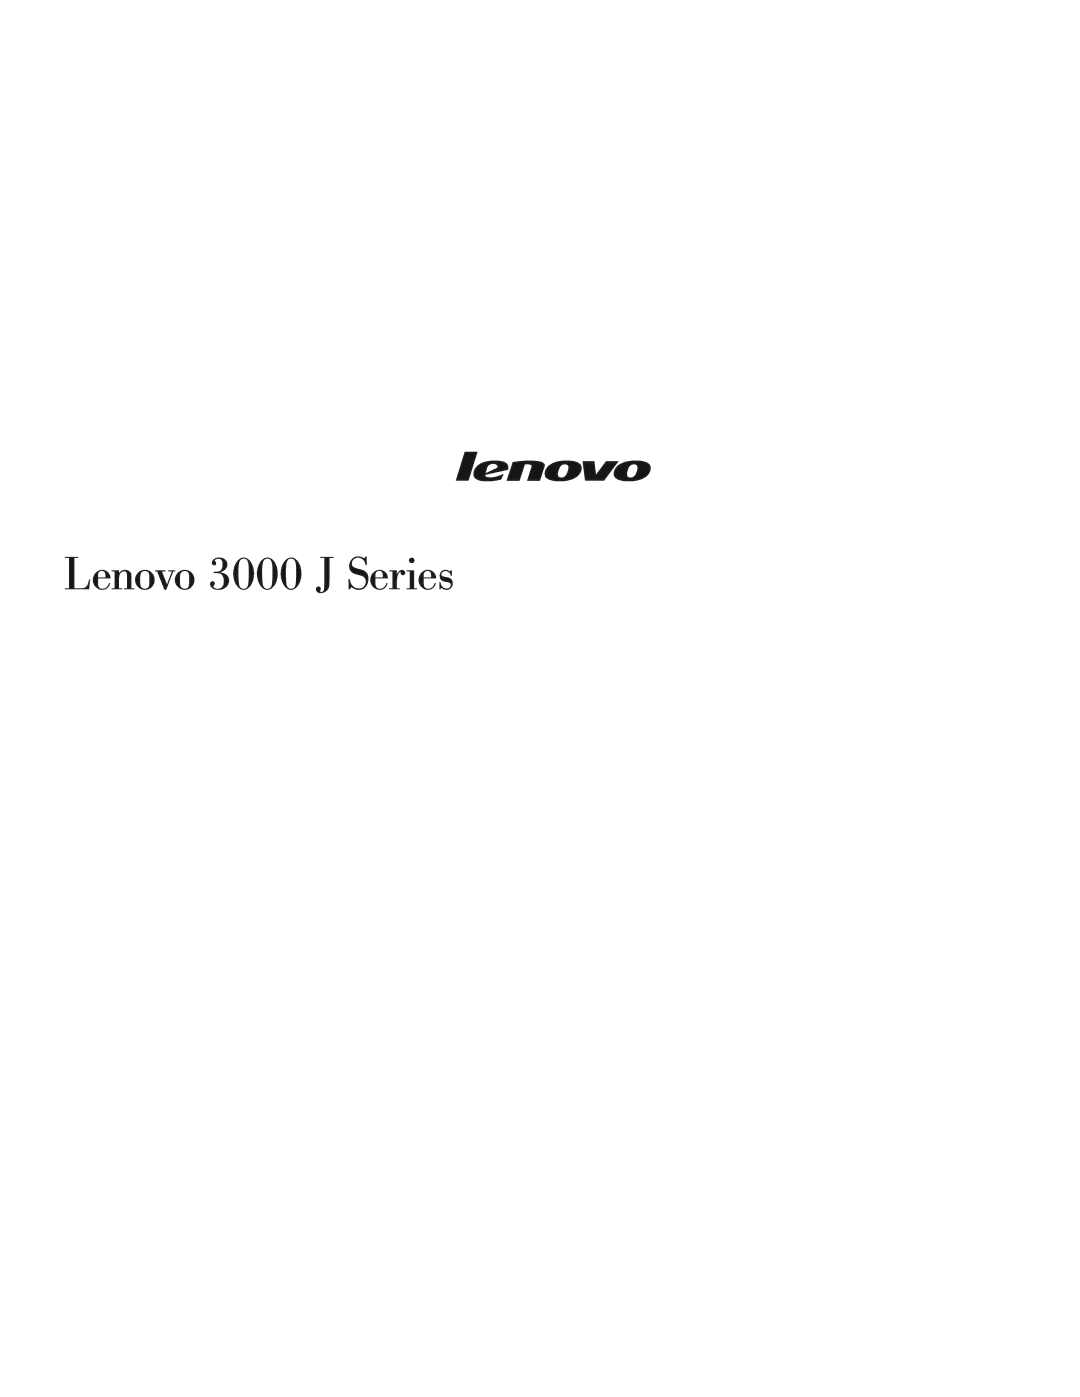 Lenovo warranty Lenovo 3000 J Series 